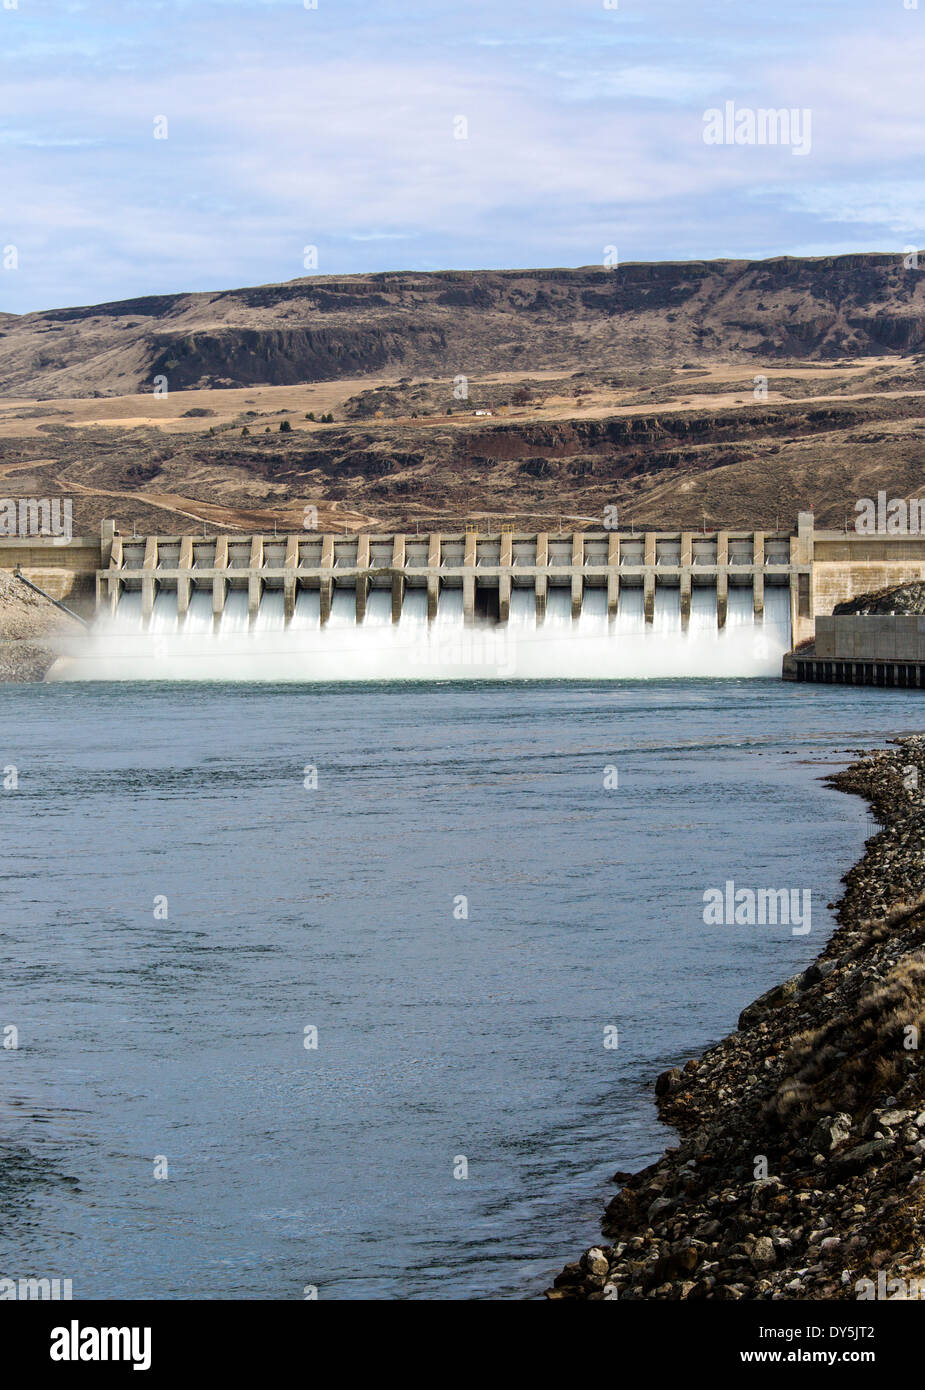 Le chef Joseph Barrage, deuxième plus grand producteur d'électricité en France, barrage hydroélectrique sur le fleuve Columbia, Washington State, USA Banque D'Images